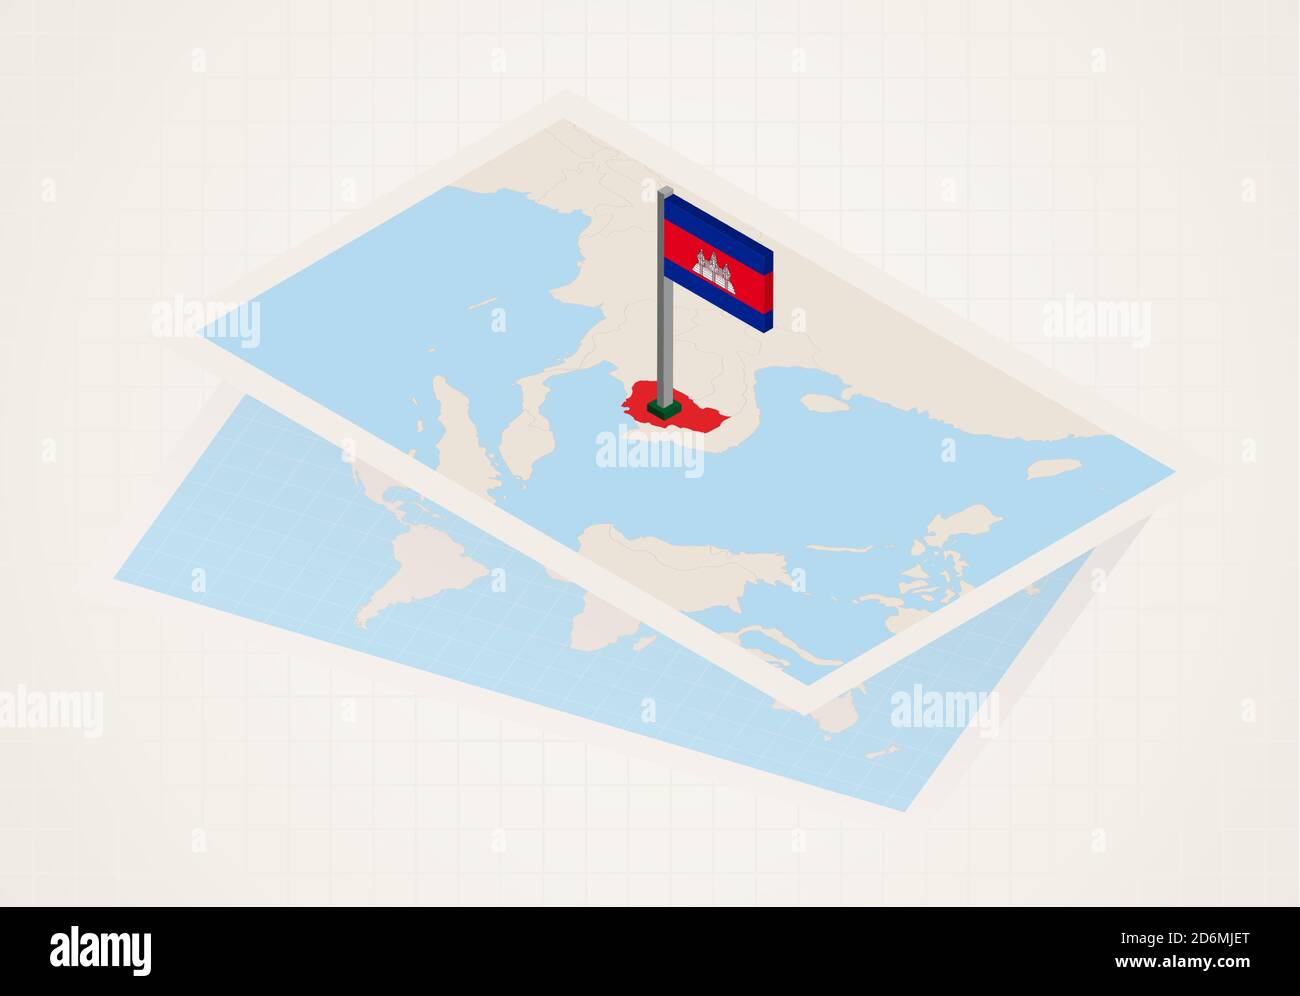 Kambodscha auf der Karte mit isometrischer Flagge von Kambodscha ausgewählt. Vektor-Papierkarte. Stock Vektor